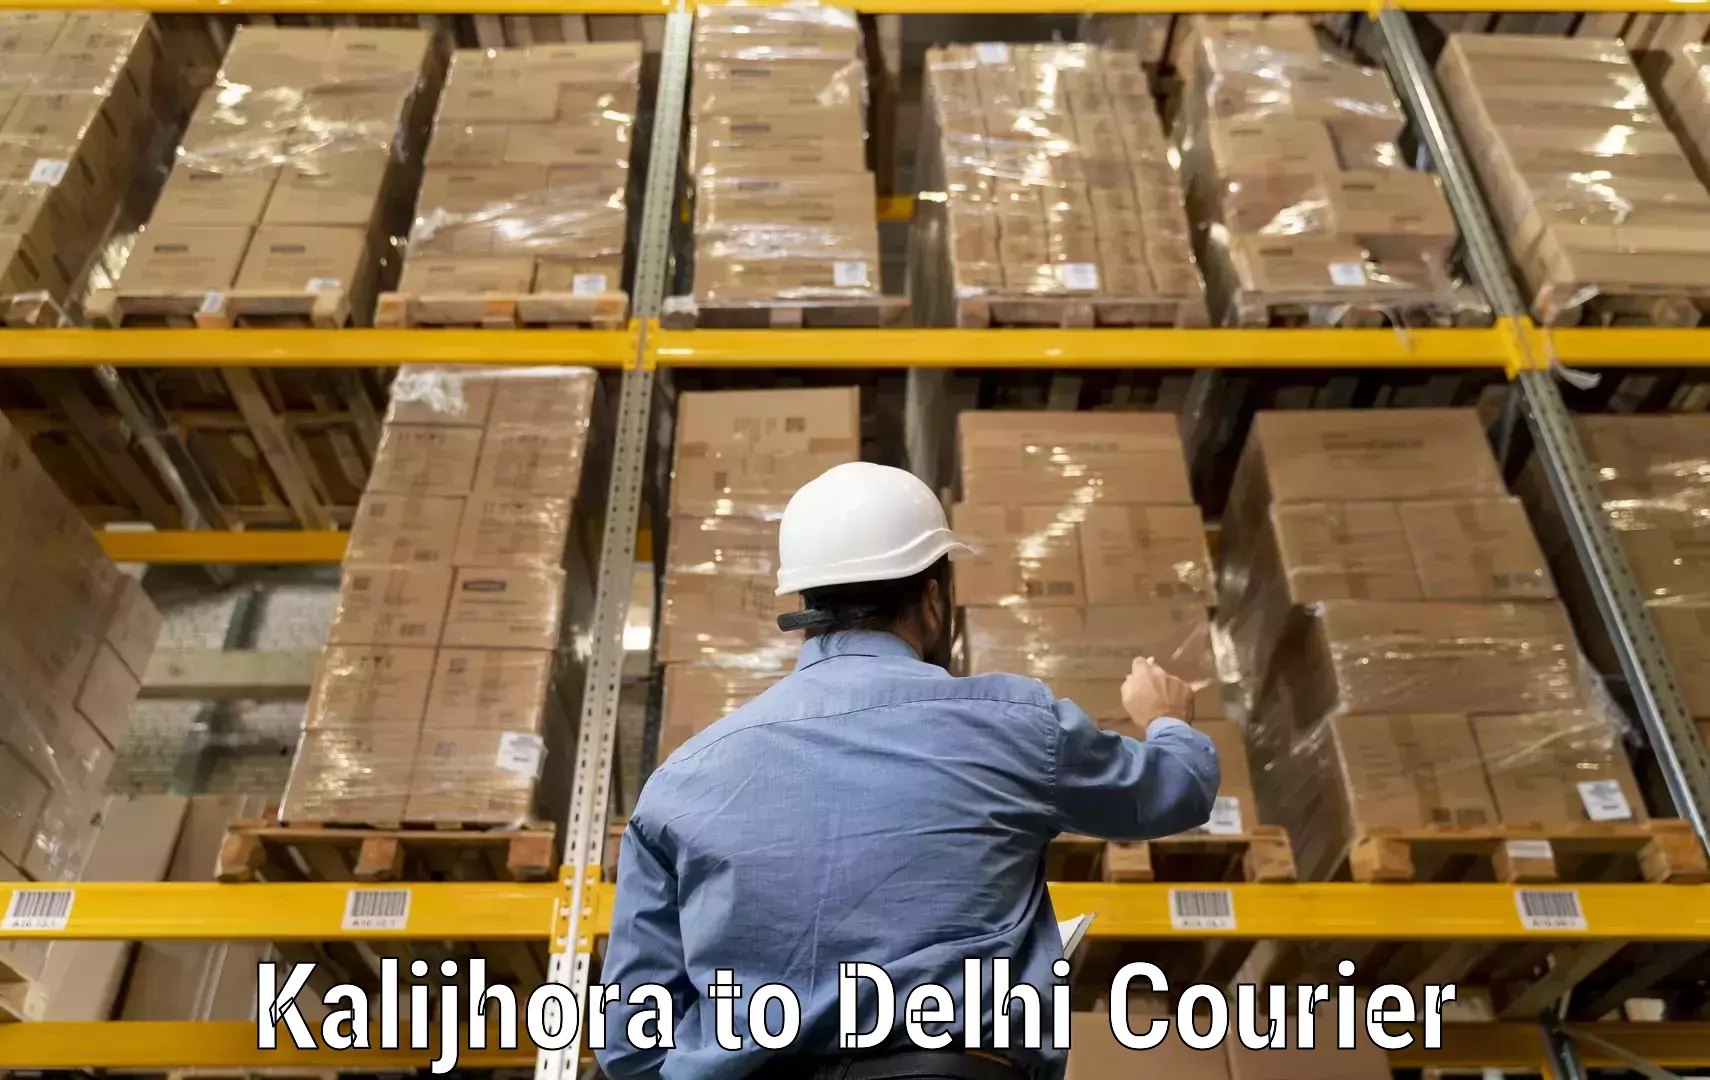 Urban courier service Kalijhora to Delhi